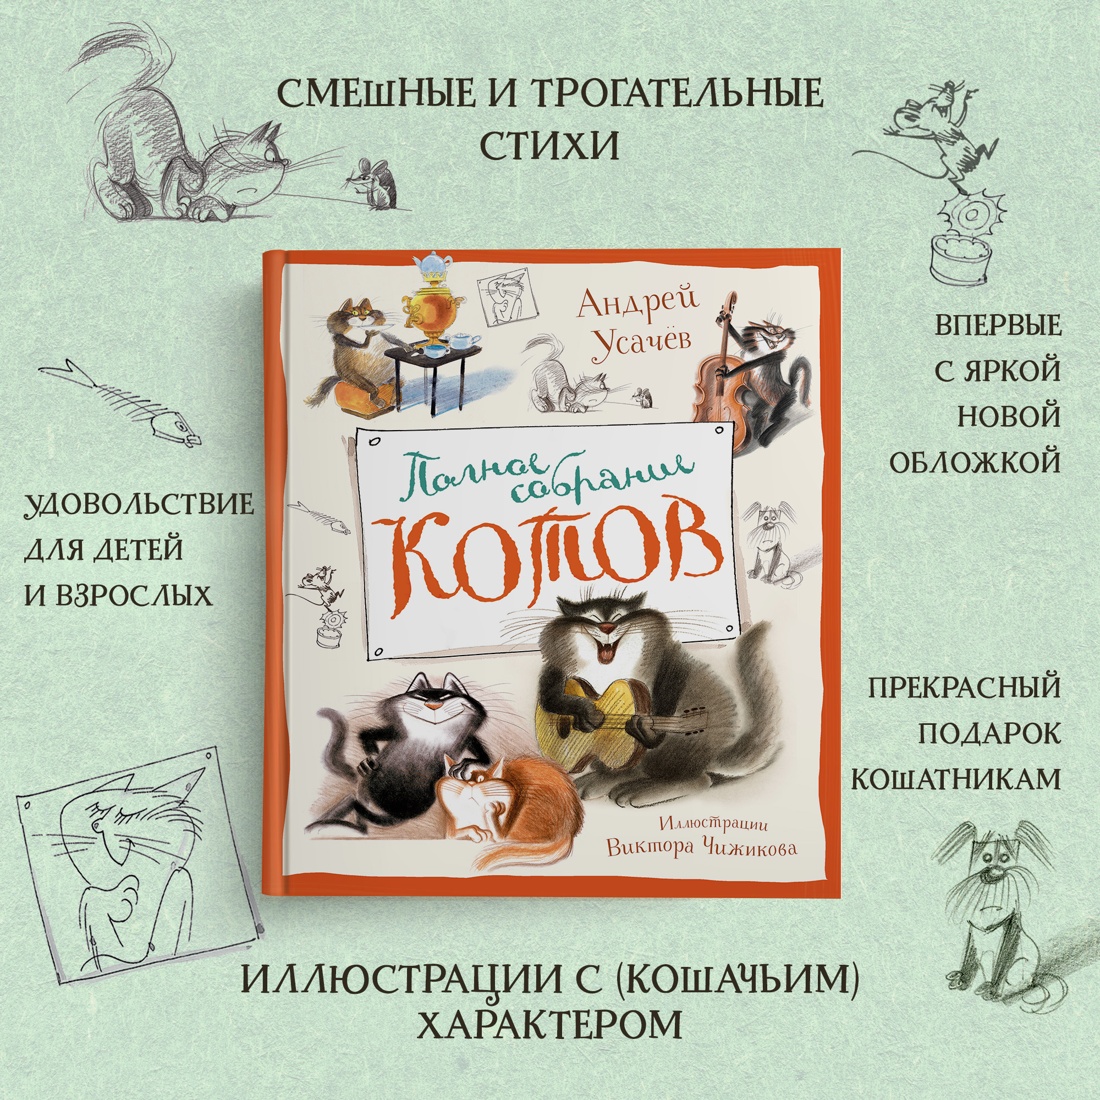 Промо материал к книге "Полное собрание котов" №1